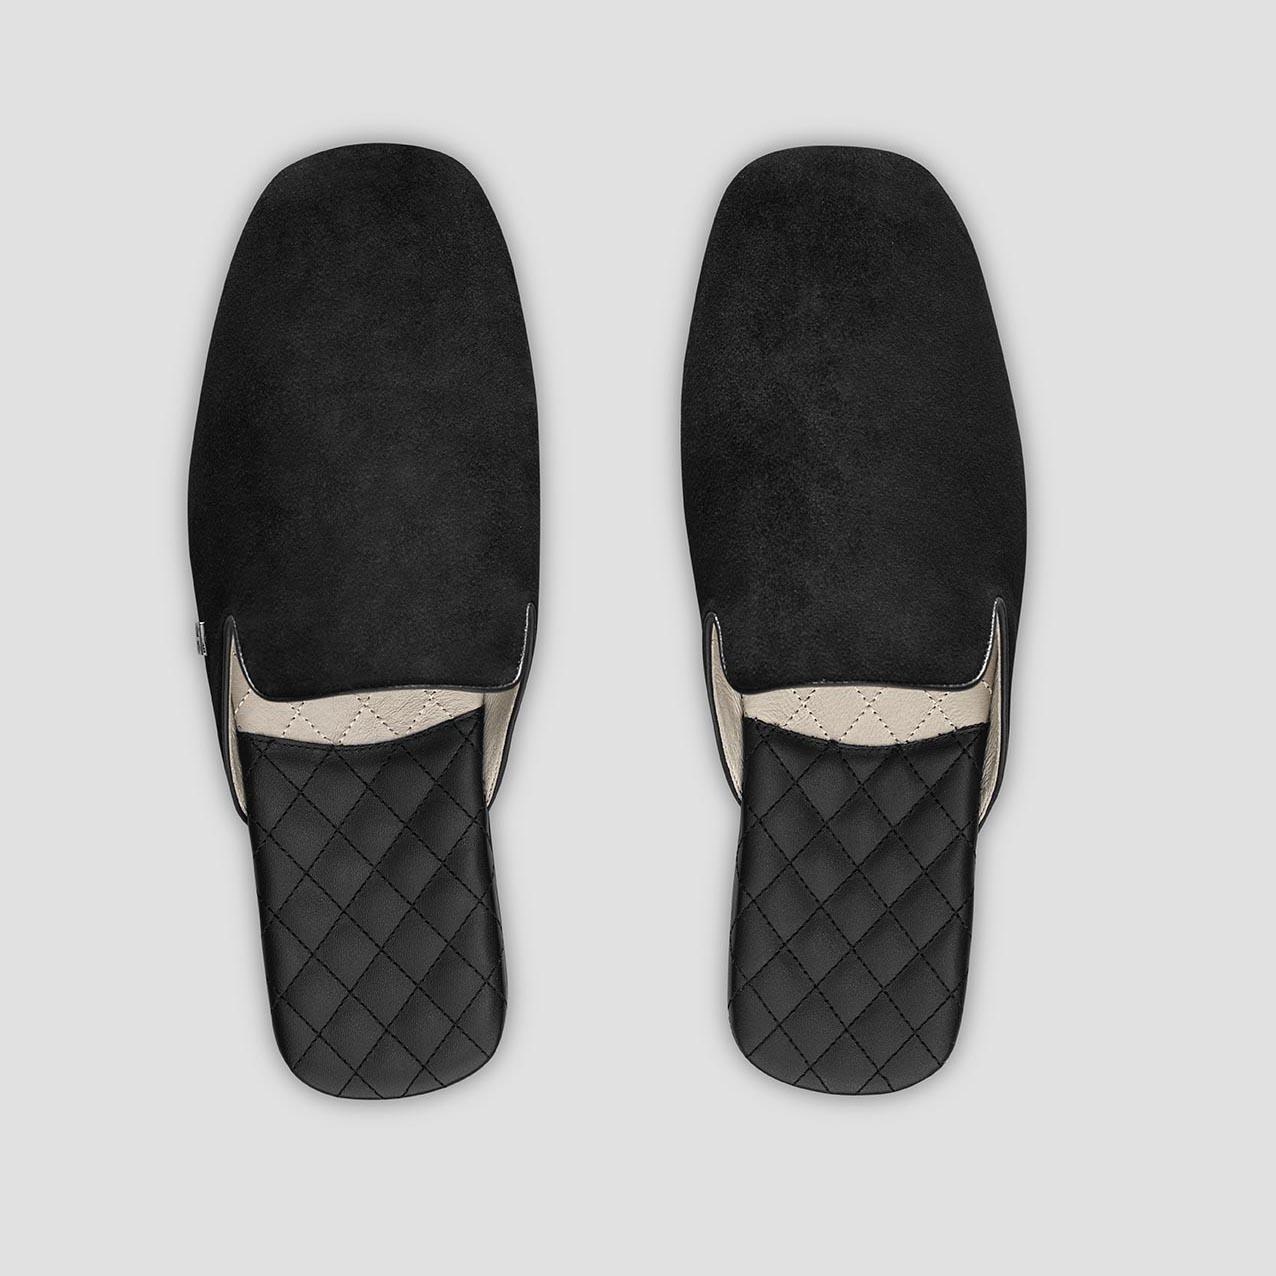 Тапочки Togas Реон черные мужские кожаные, размер 42-43 реснички набор 2 шт размер 1 шт 20 × 1 см чёрный